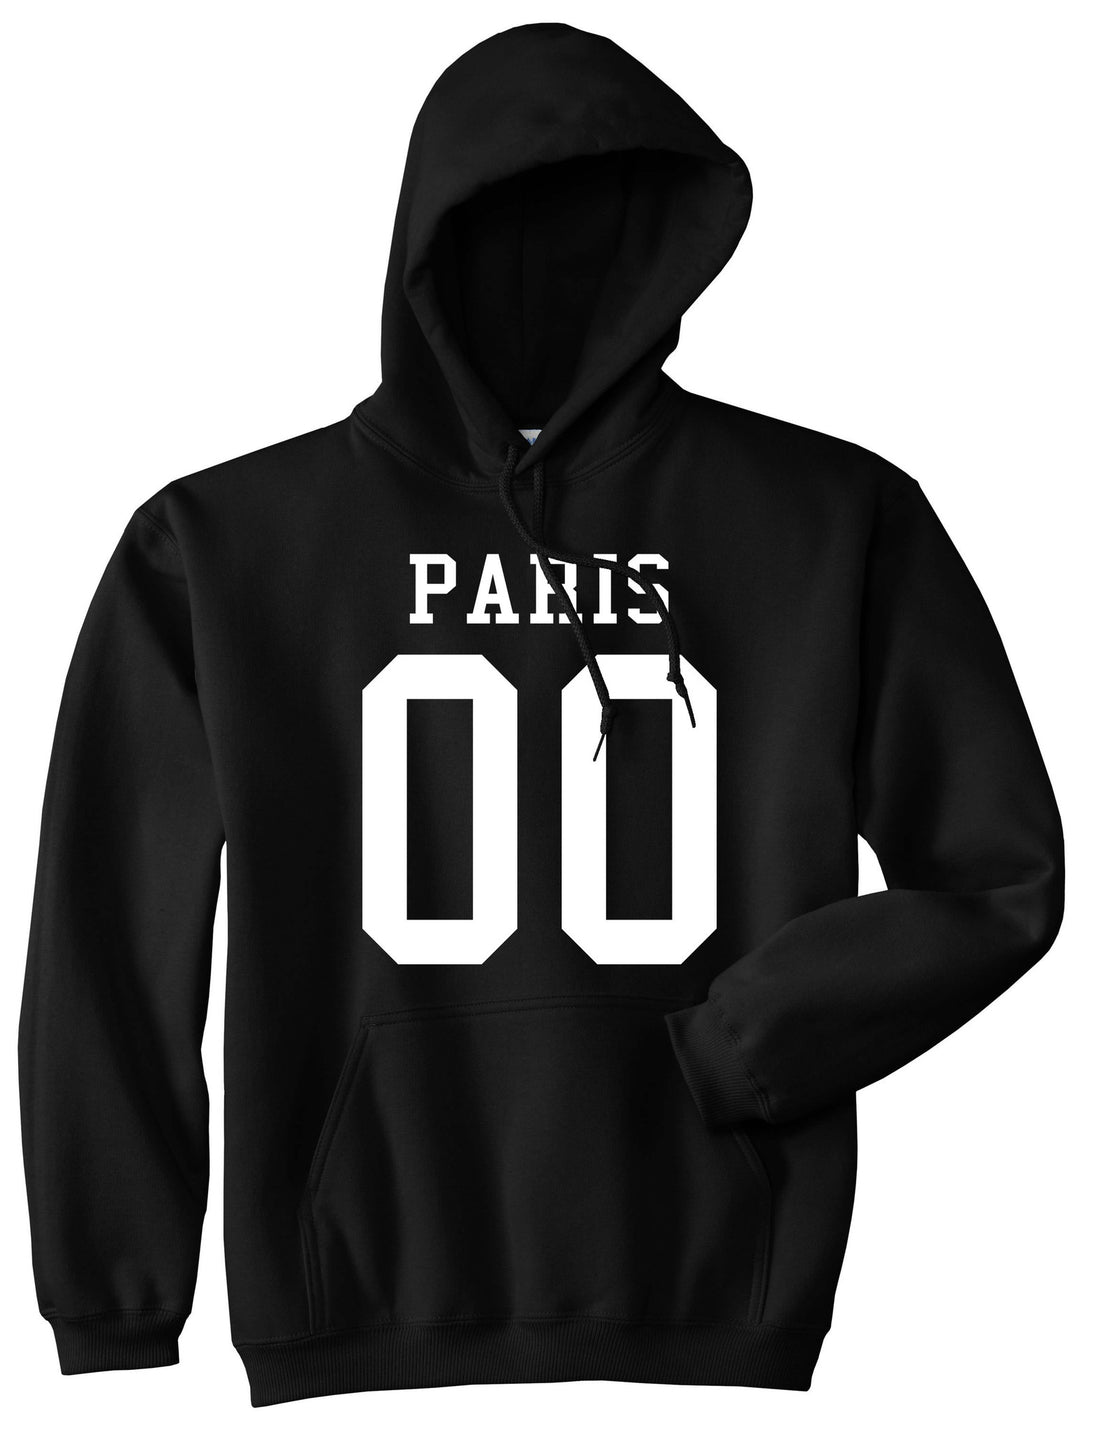 Paris Team 00 Jersey Boys Kids Pullover Hoodie Hoody in Black By Kings Of NY